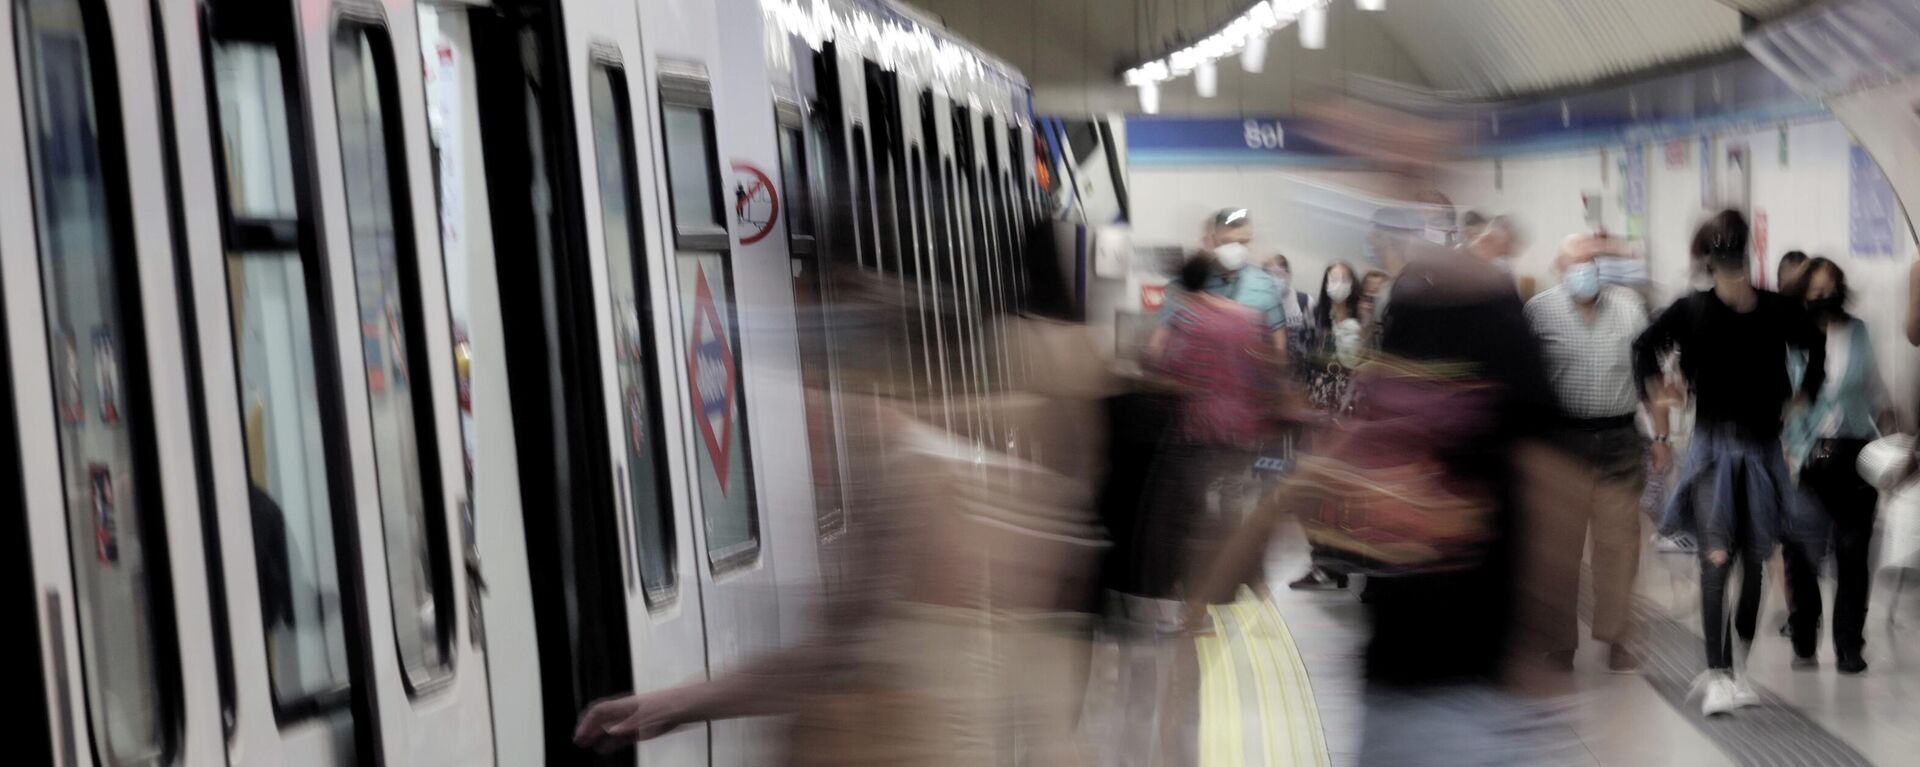 Una imagen del metro de Madrid el 14 de junio de 2021 (referencial) - Sputnik Mundo, 1920, 19.07.2021